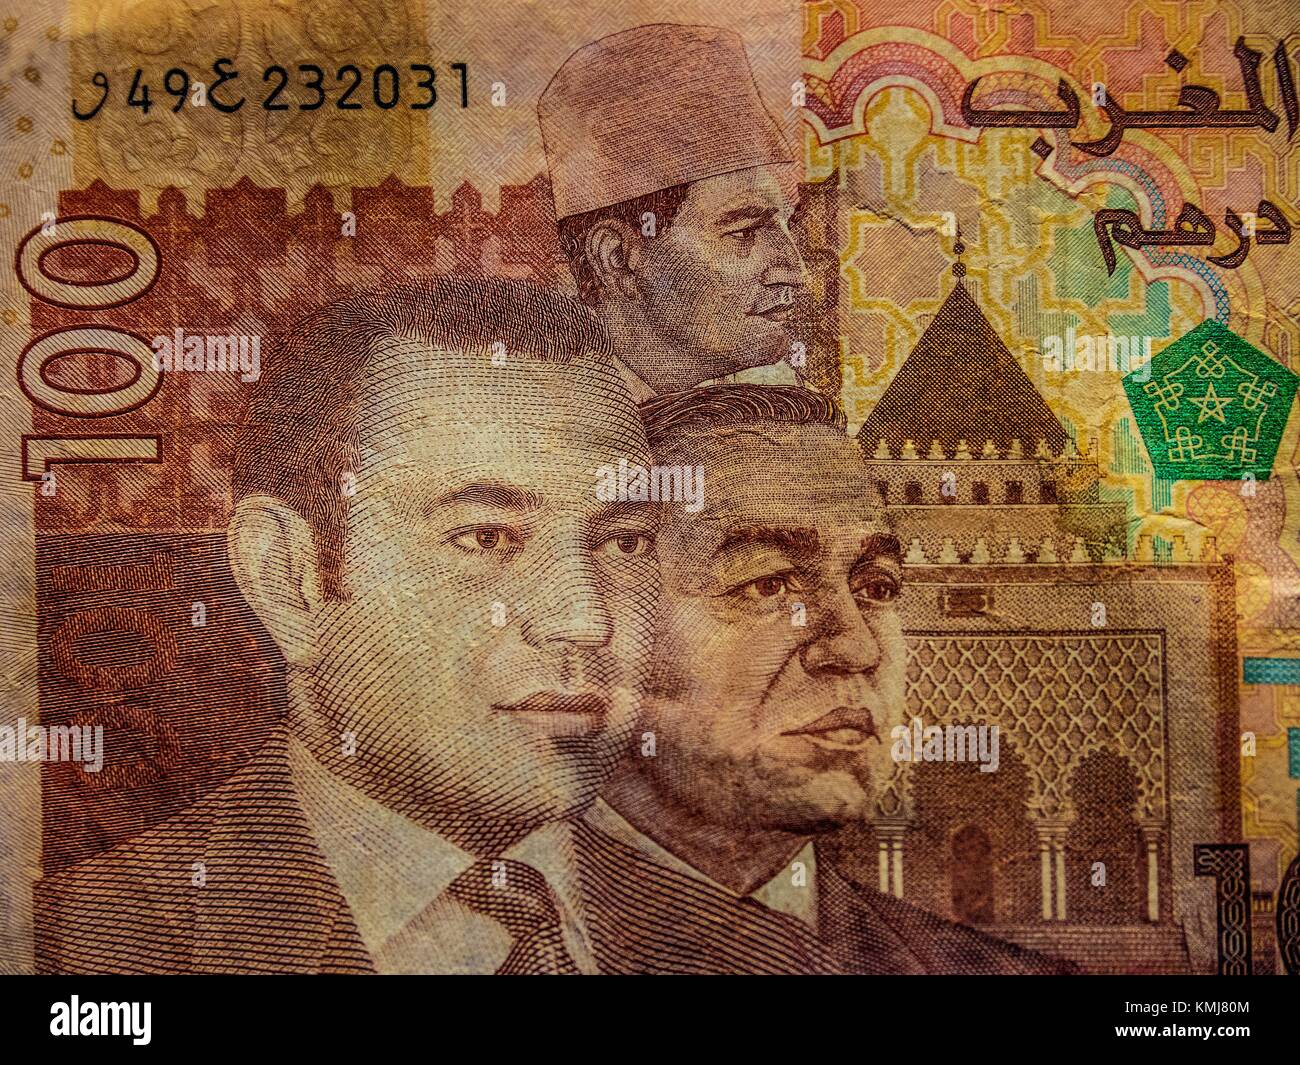 Marokkanische Banknote zeigt die 3 Könige seit der Unabhängigkeit von Marokko: Mohamed V, mit einer ''Chech'', sein Sohn Hassan II., und seinen Sohn wieder, Mohamed VI. Stockfoto